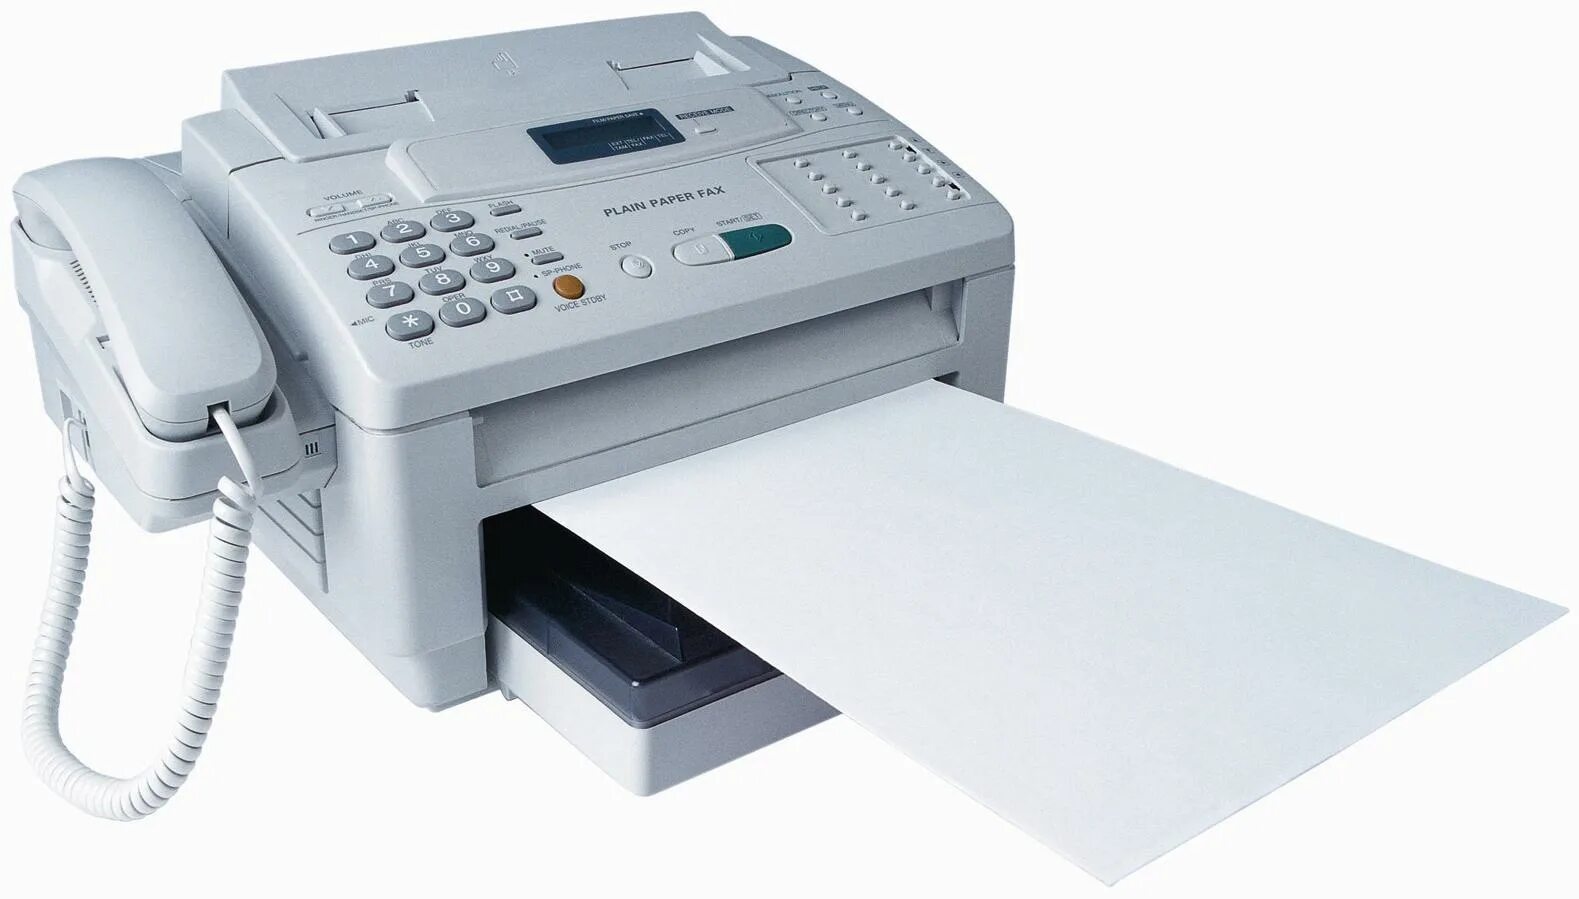 Факсимильный аппарат Panasonic KX-fc278ru. Факс 2023. Факсимильный аппарат Canon Fax 750. Факс 1990. Факсимильная связь что это